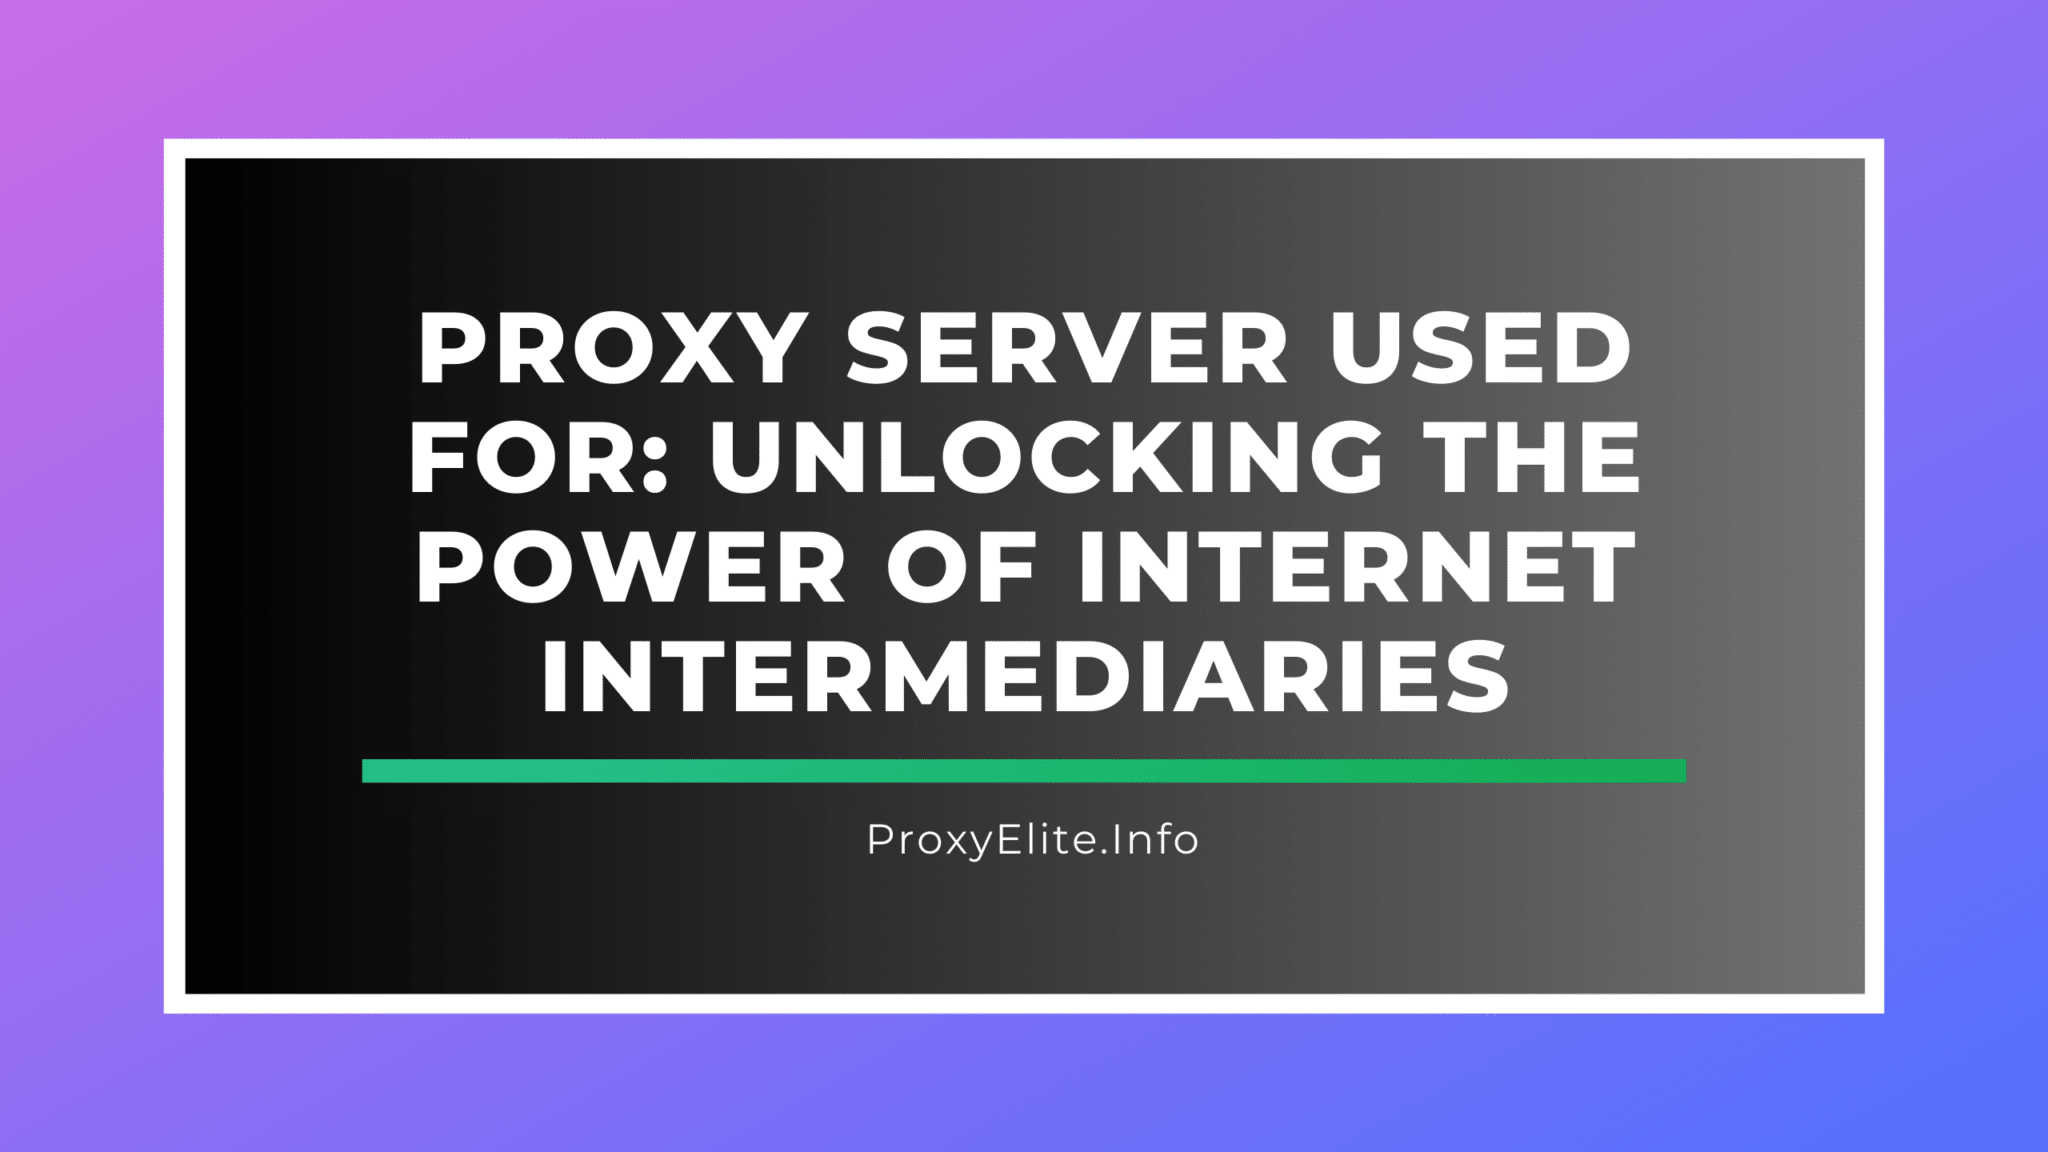 Servidor proxy utilizado para: desbloquear el poder de los intermediarios de Internet